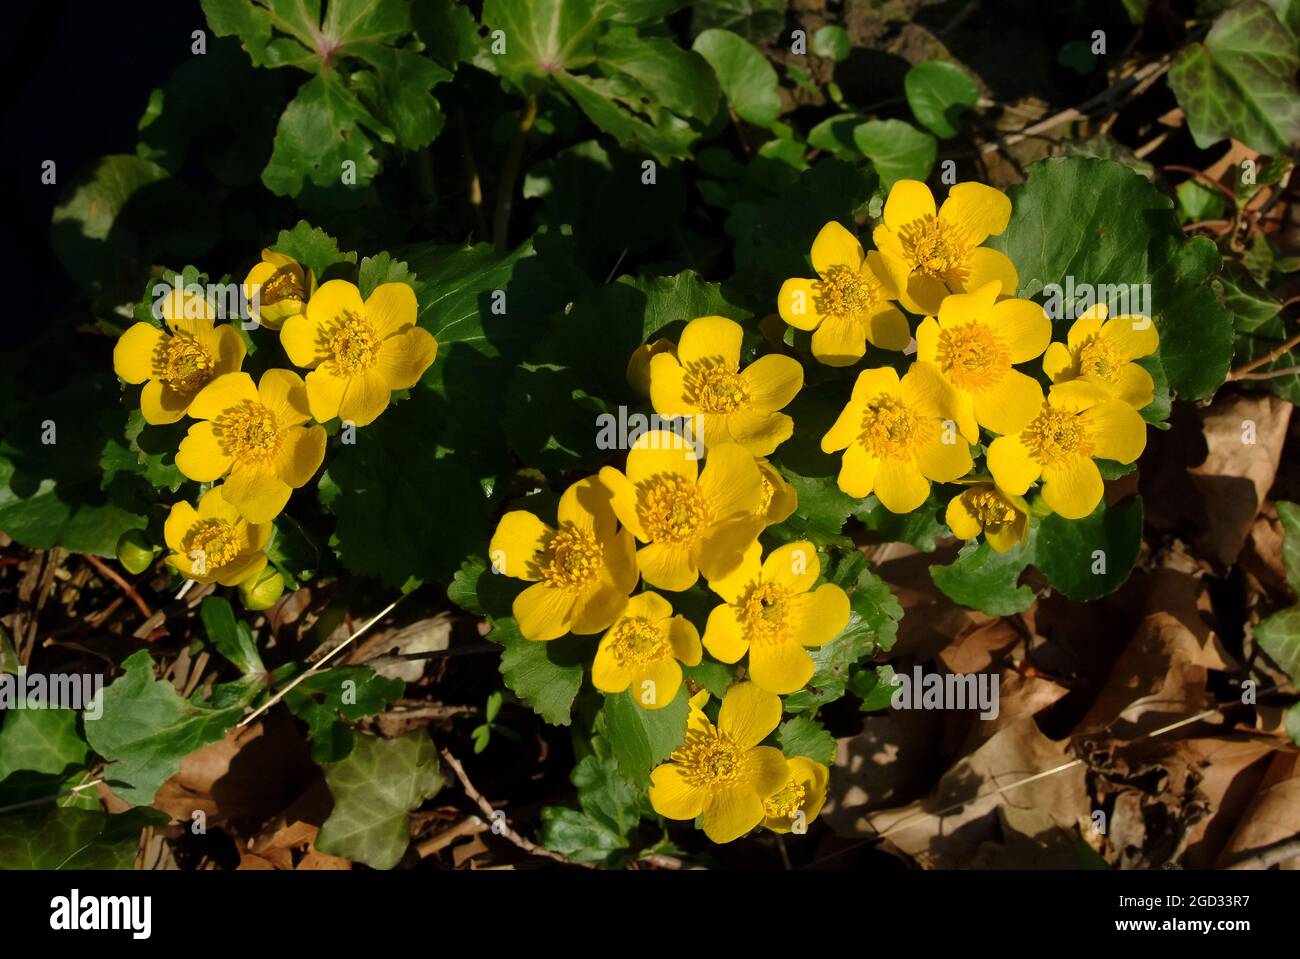 marsh-marigold, kingcup, Sumpfdotterblume, Caltha palustris, mocsári gólyahír, Hungary, Magyarország, Europe Stock Photo